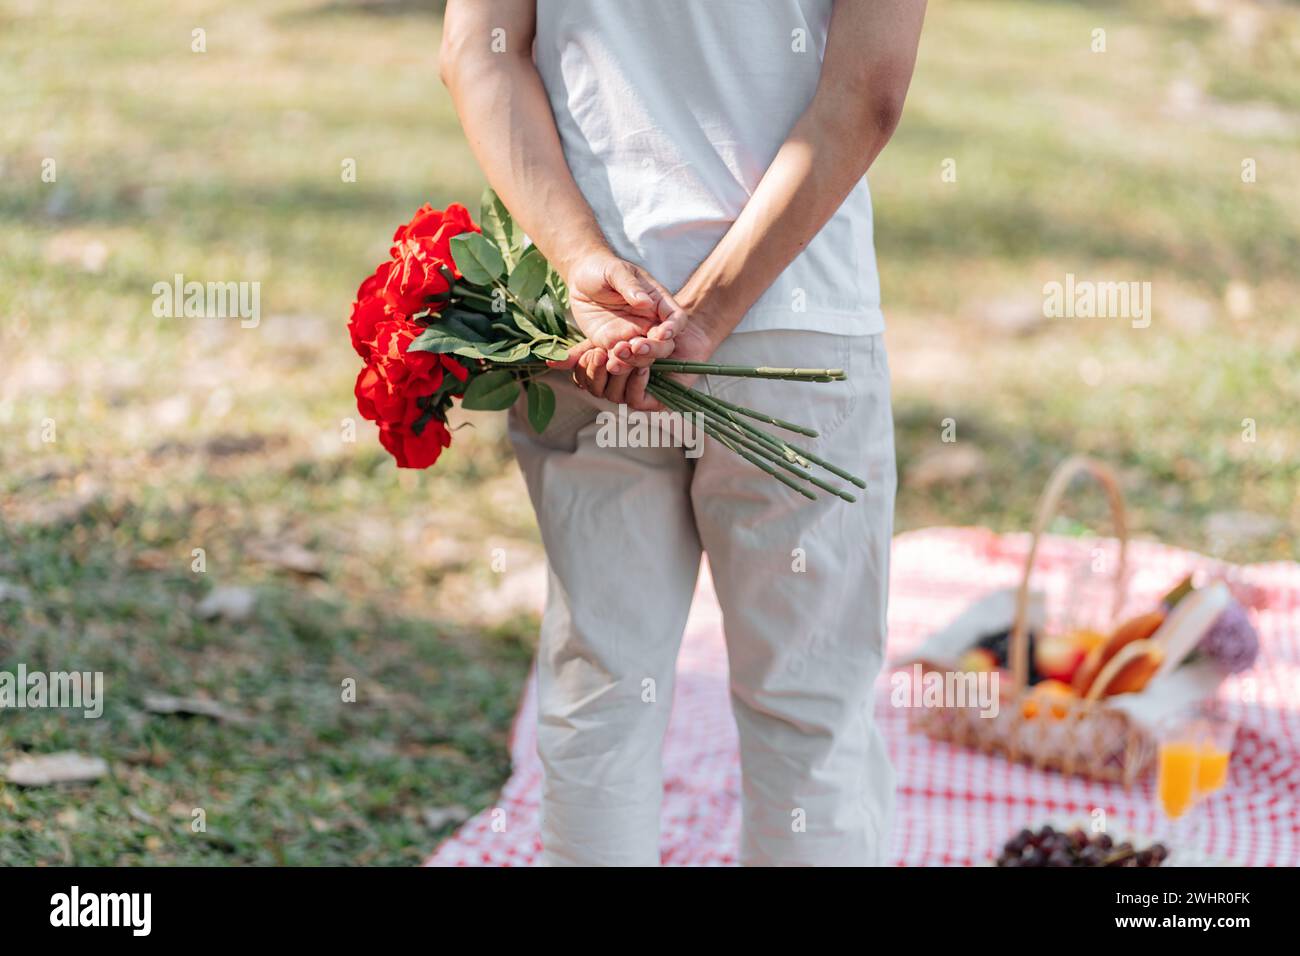 Heureux couple romantique dans la Saint-Valentin homme asiatique cachant la fleur de rose rouge derrière pour surprendre sa petite amie. Banque D'Images